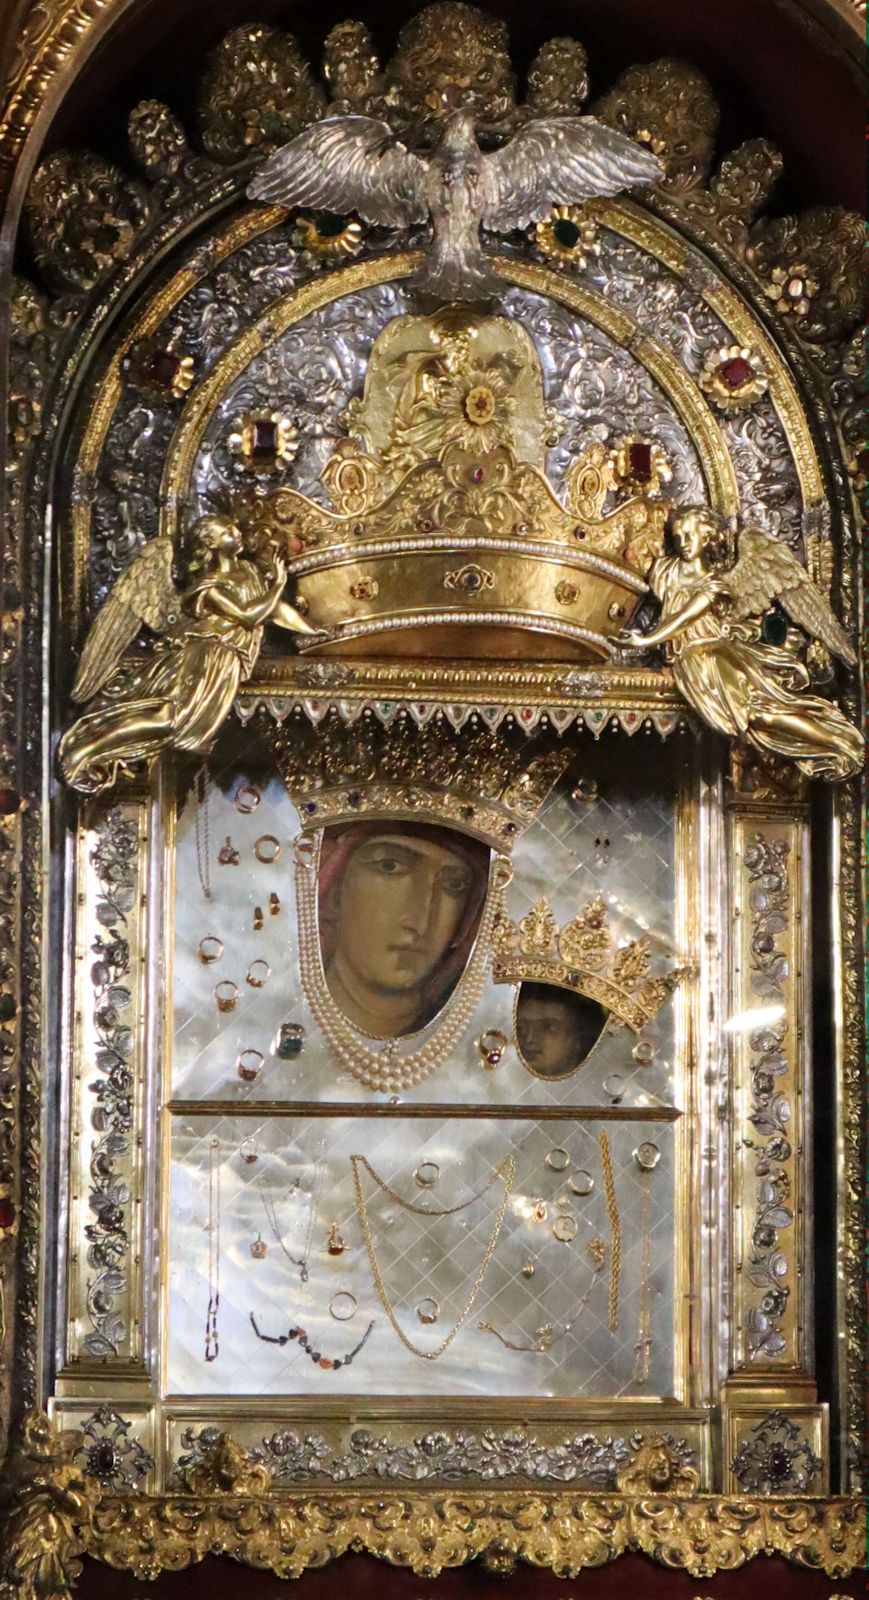 Lukas zugeschriebene, tatsächlich byzantinische Ikone des Typs Hodegetria aus dem 12./13. Jahrhundert, seit 1625 bedeckt mit einer Silberplatte, im Santuarium Madonna di San Luca in Bologna